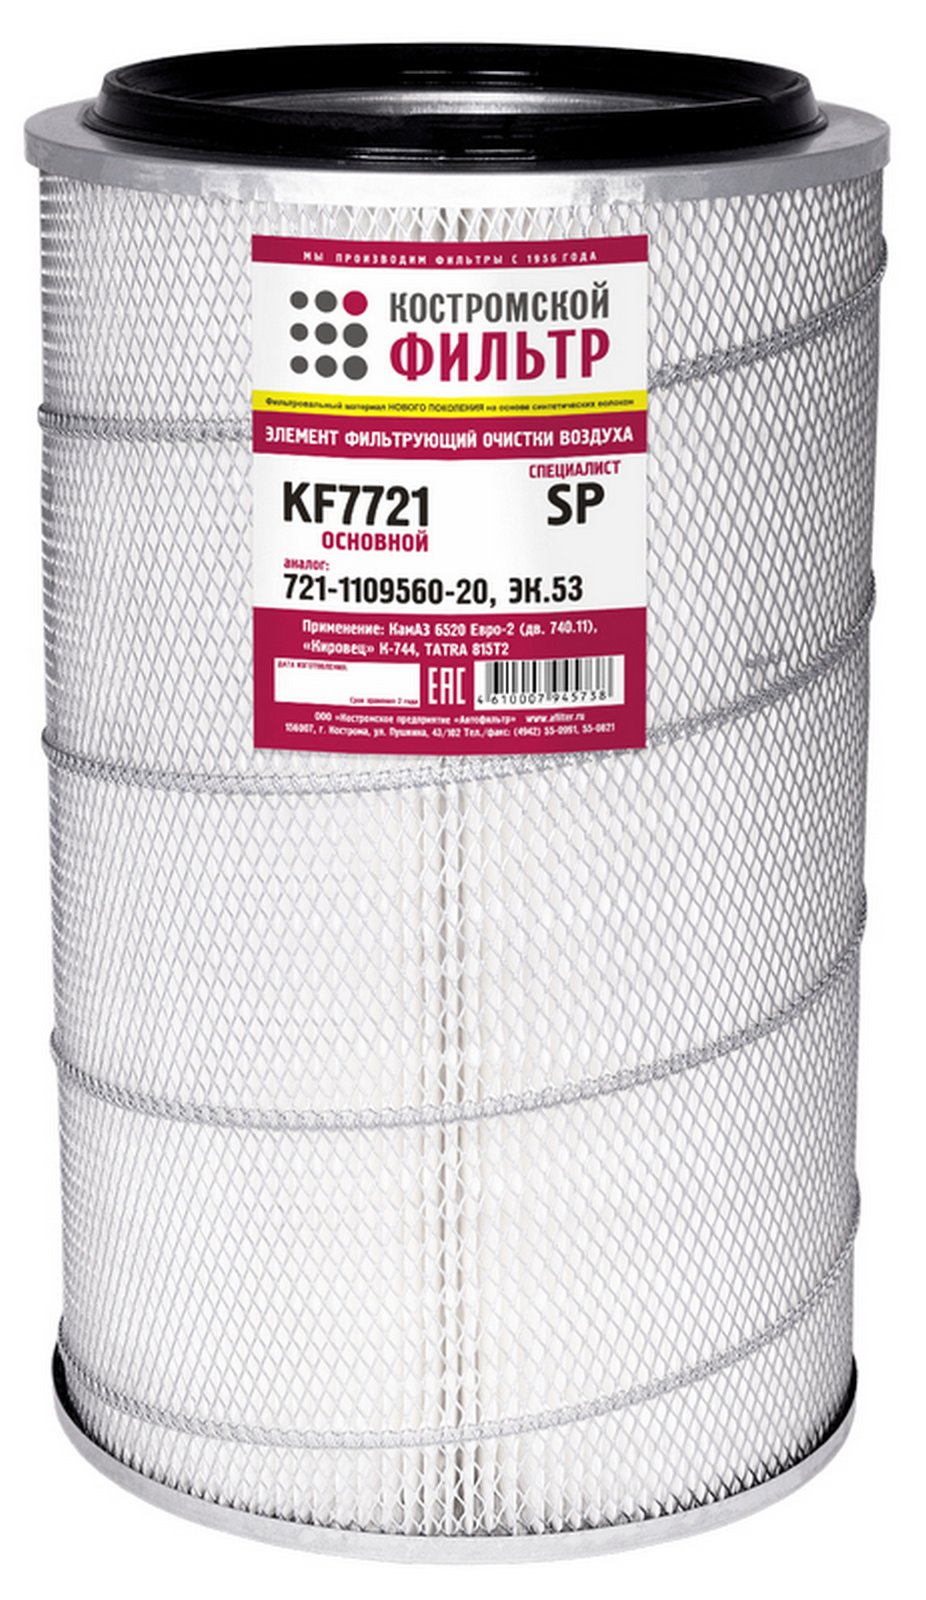 KF7721 SP Элемент фильтрующий очистки воздуха KF7721 SP (721-1109560-20, ЭК.53) Специалист основной Костромской фильтр